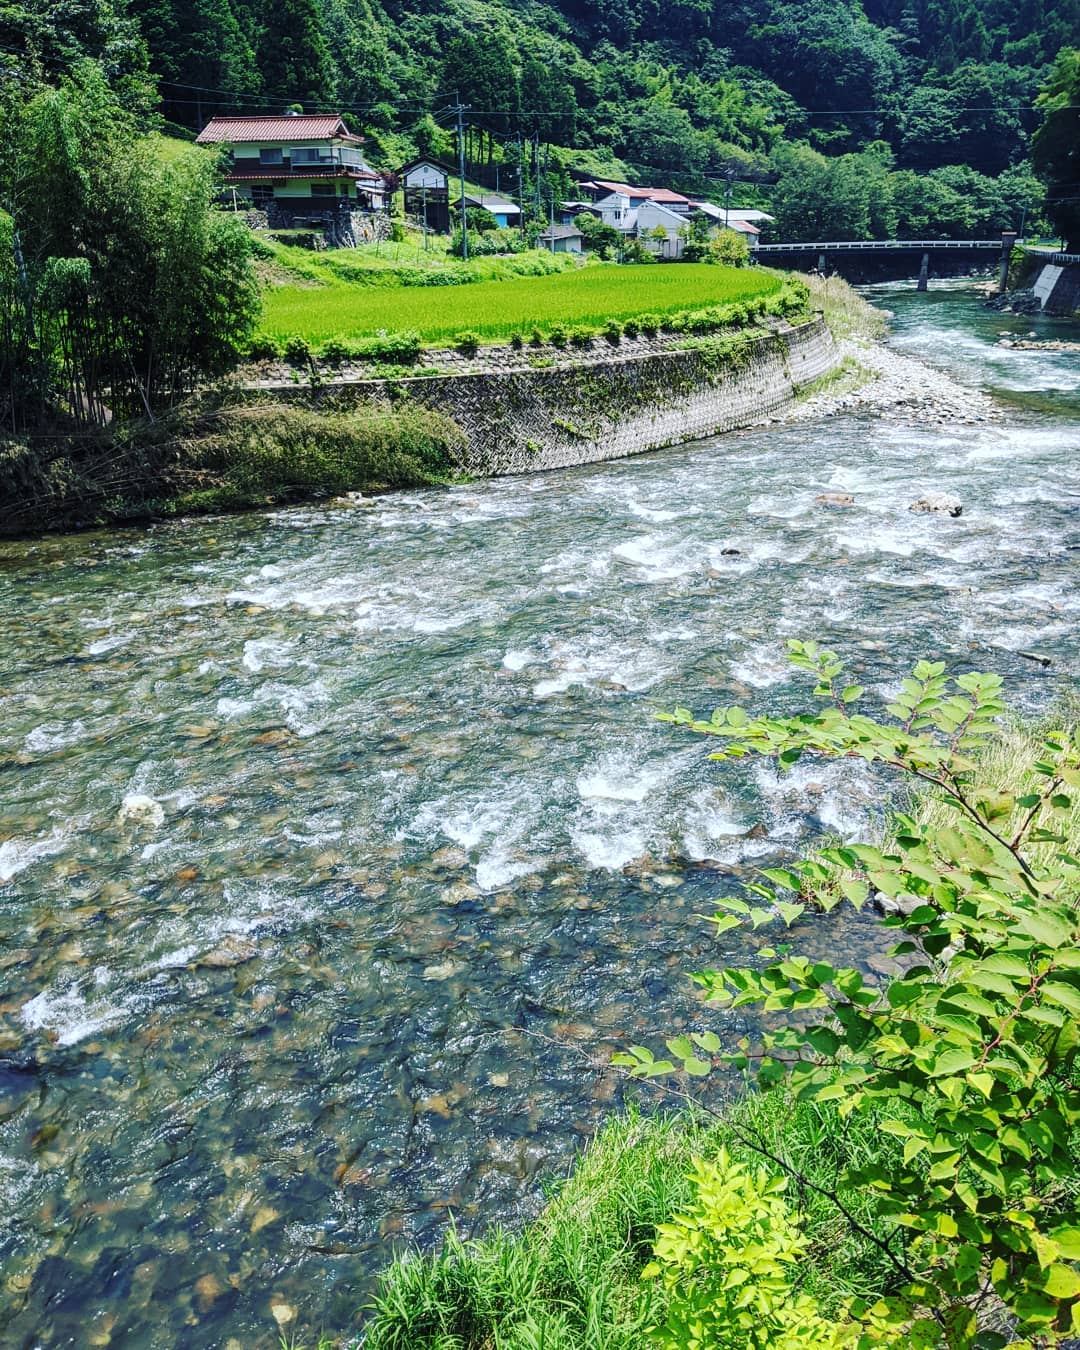 ３密を避けて誰もいない途中綺麗な川に出た人に会わない　#福山神辺#山奥の川#空気が綺麗